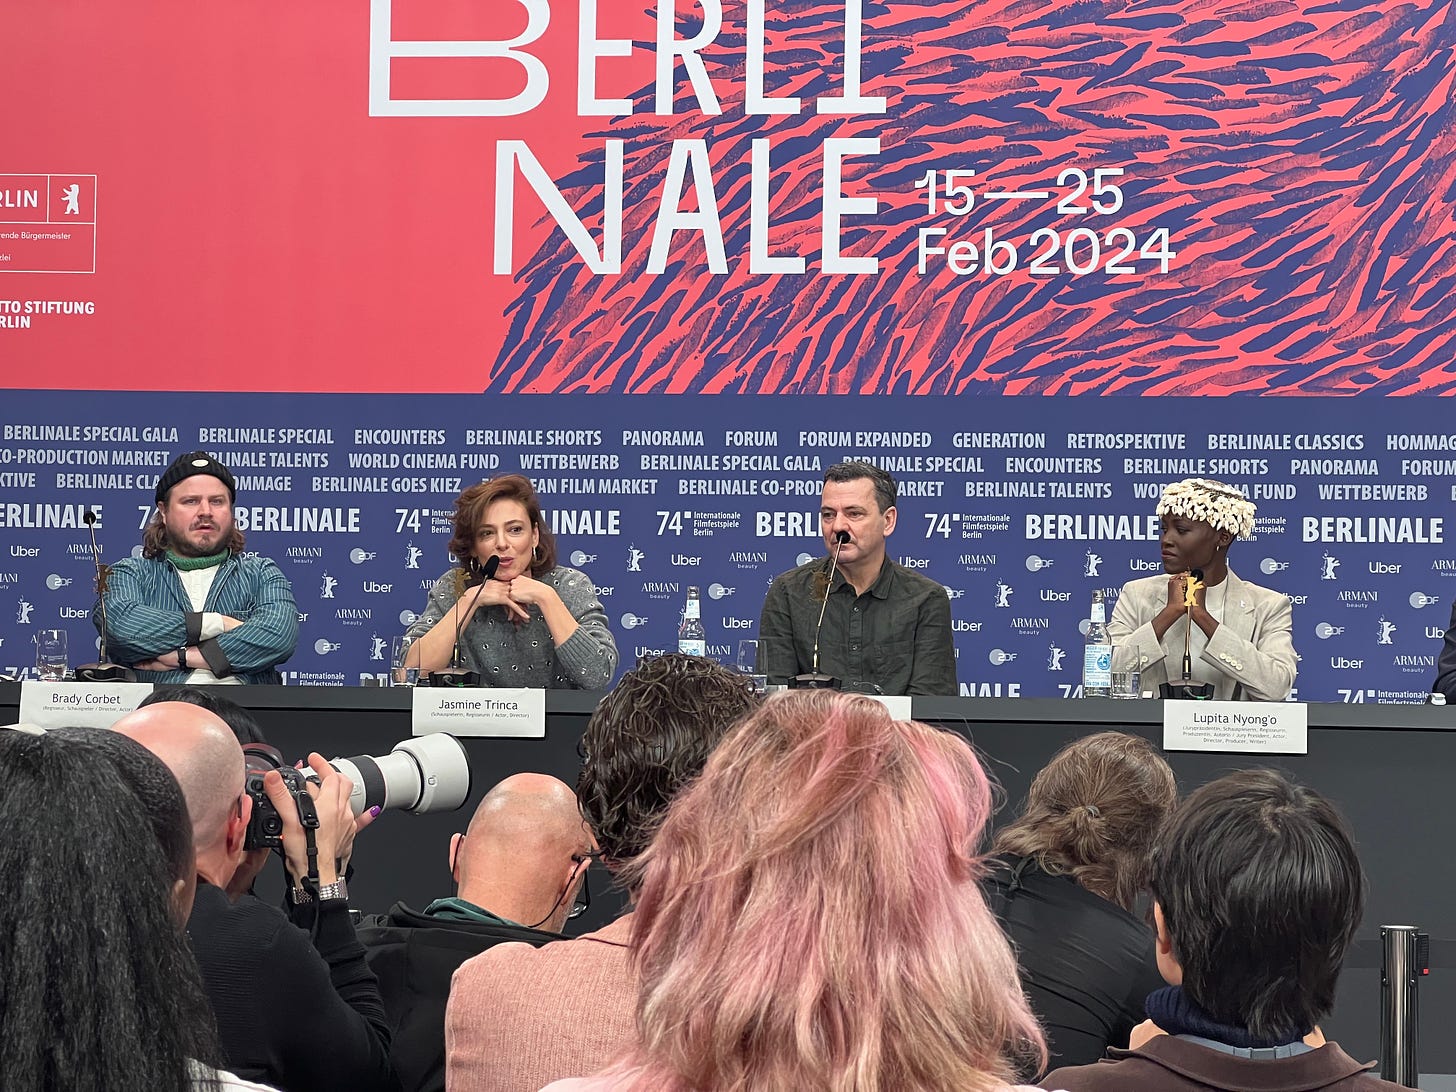 Berlinale International Jury, led by Lupita Nyong’o